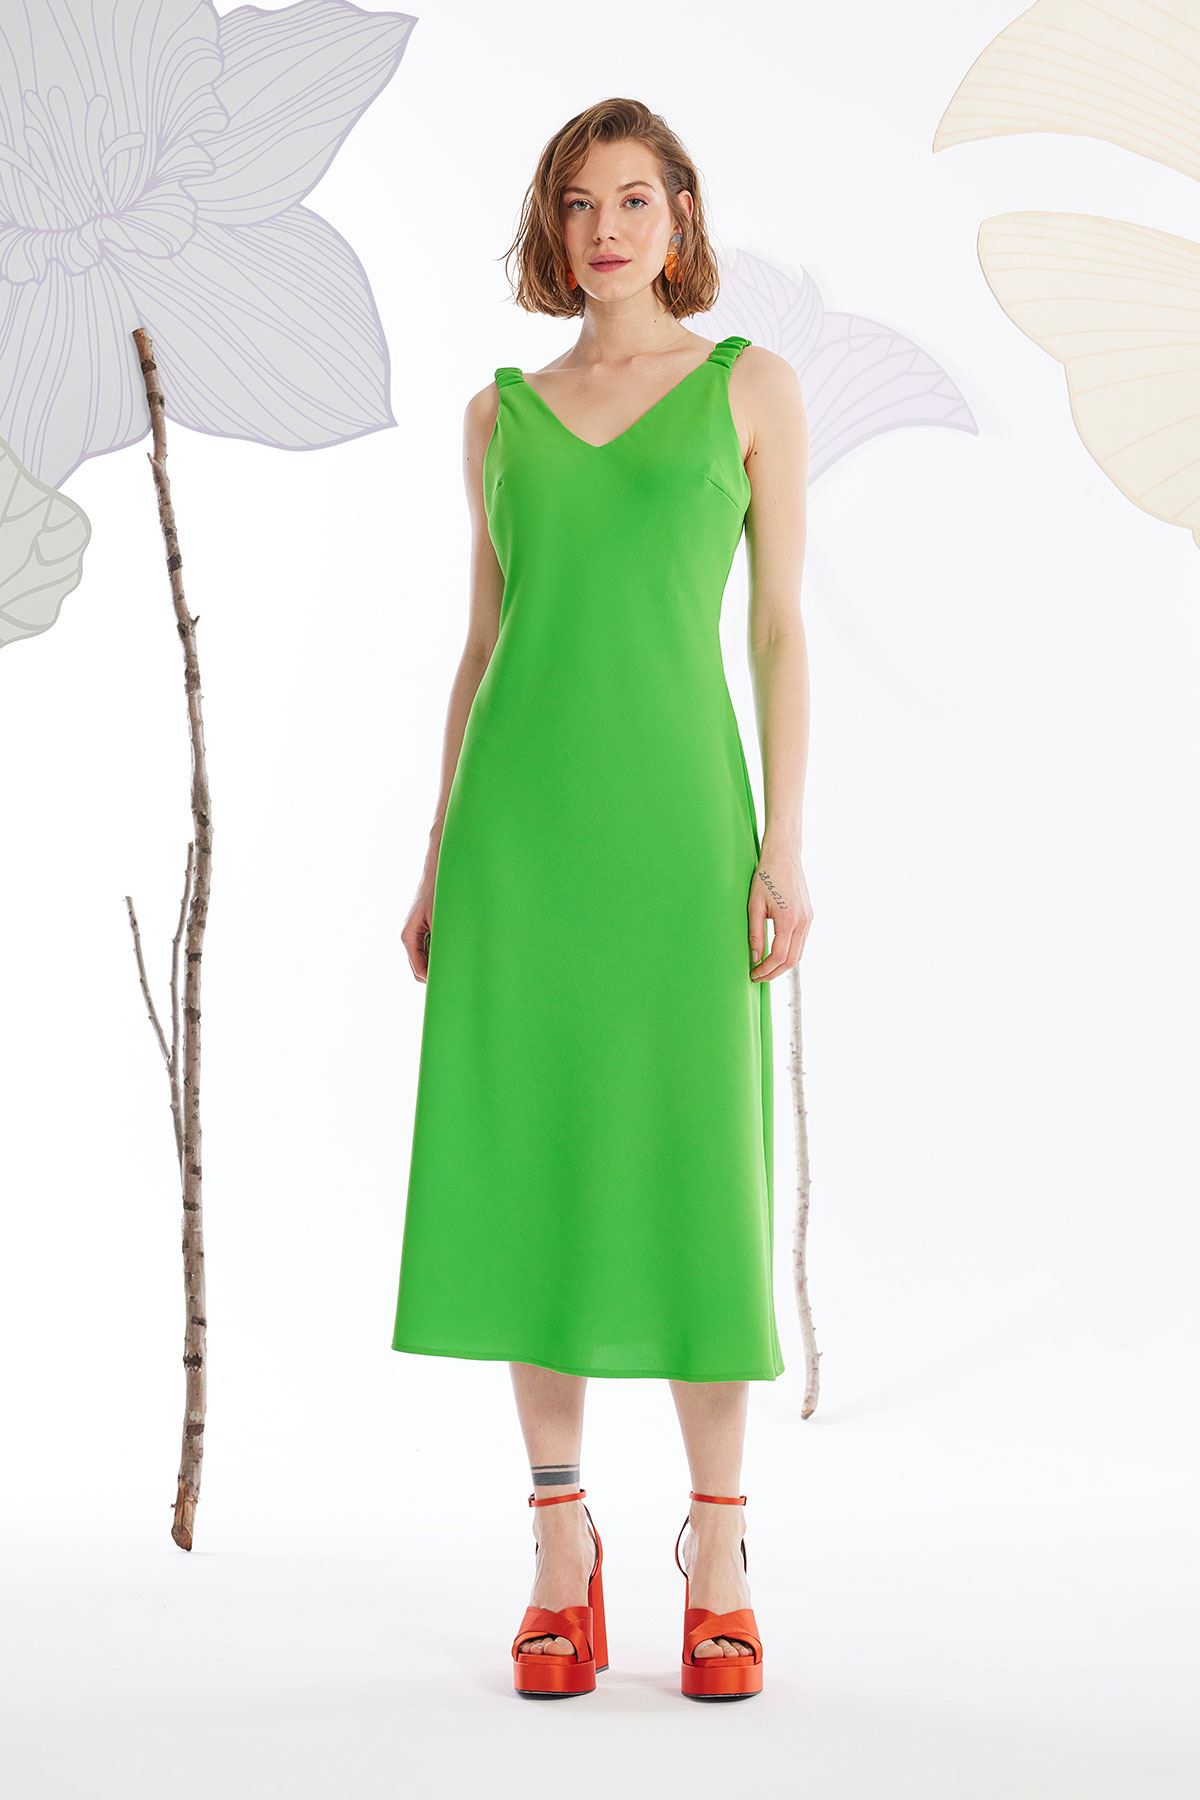 Elastik Askılı Krep Elbise Fıstık Yeşili